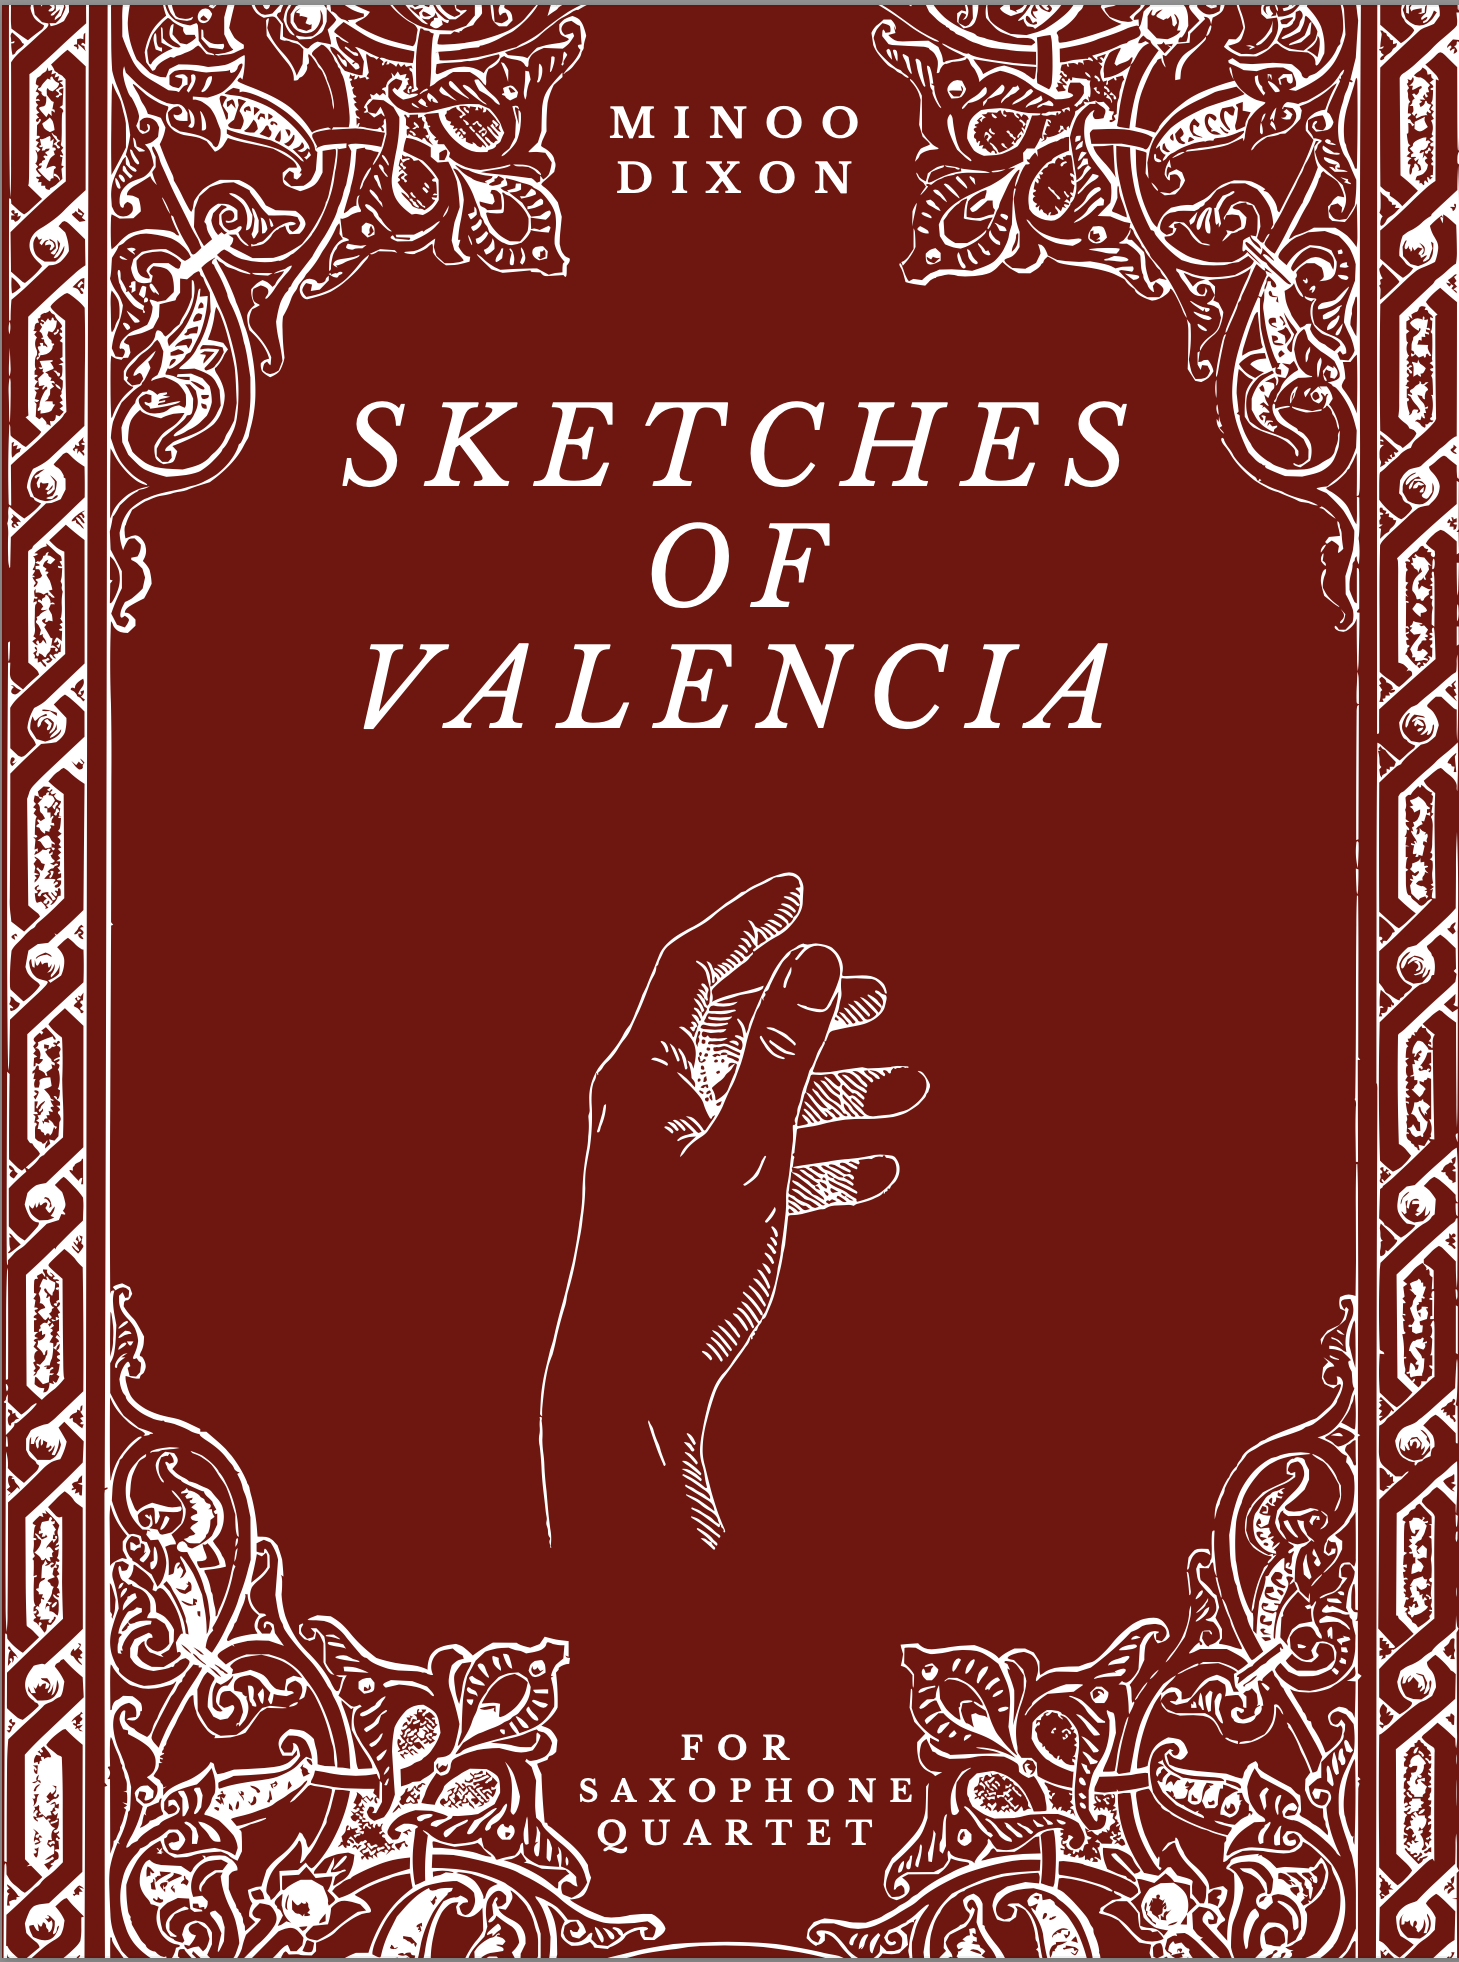 Sketches Of Valencia  by Minoo Dixon